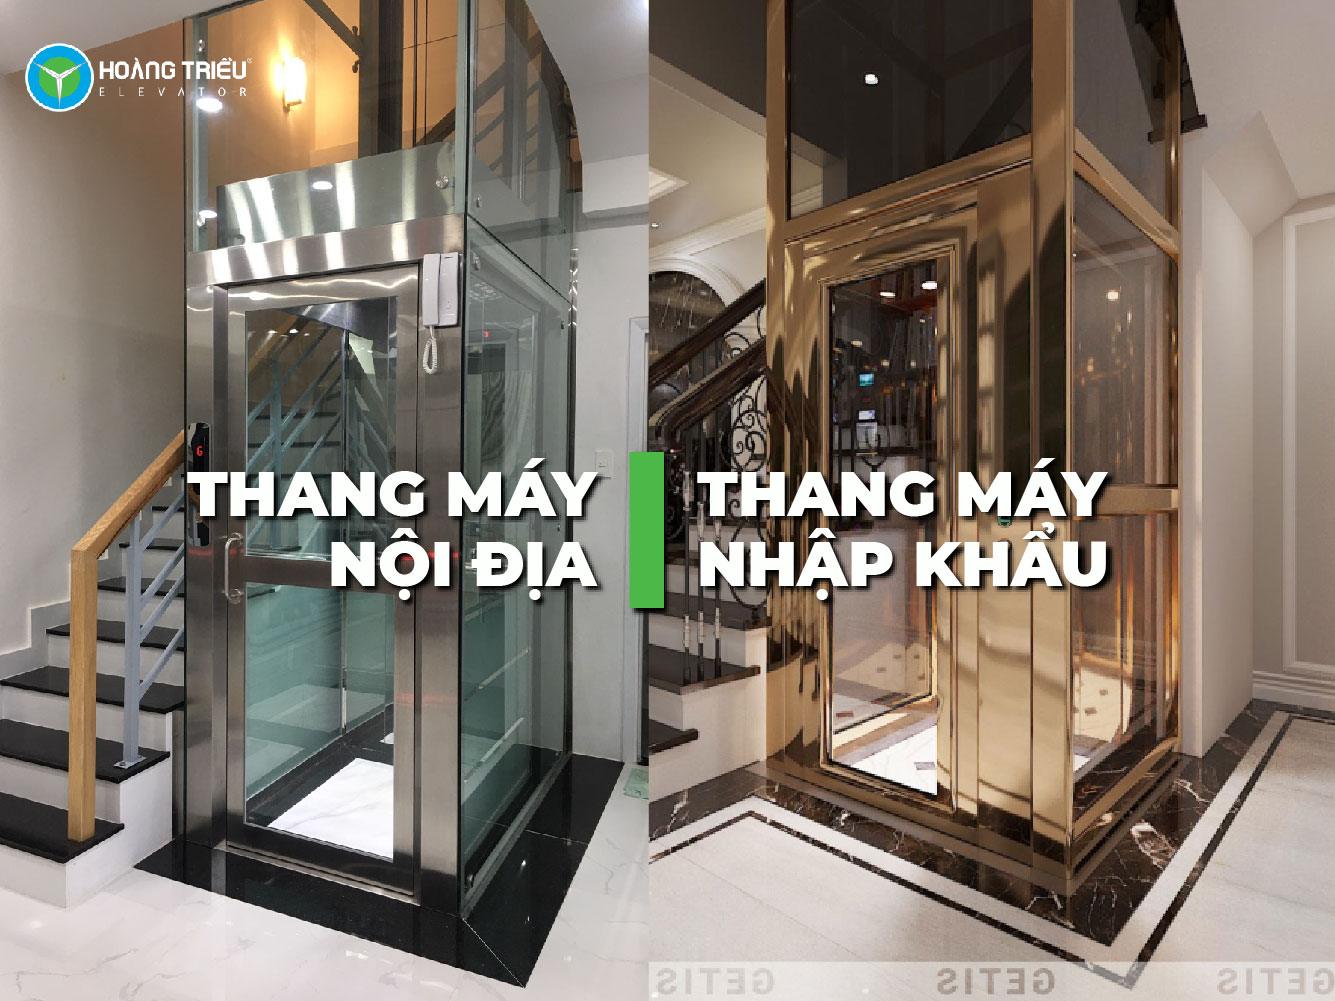 Giá lắp đặt thang máy gia đình tại TPHCM | Thang máy Hoàng Triều